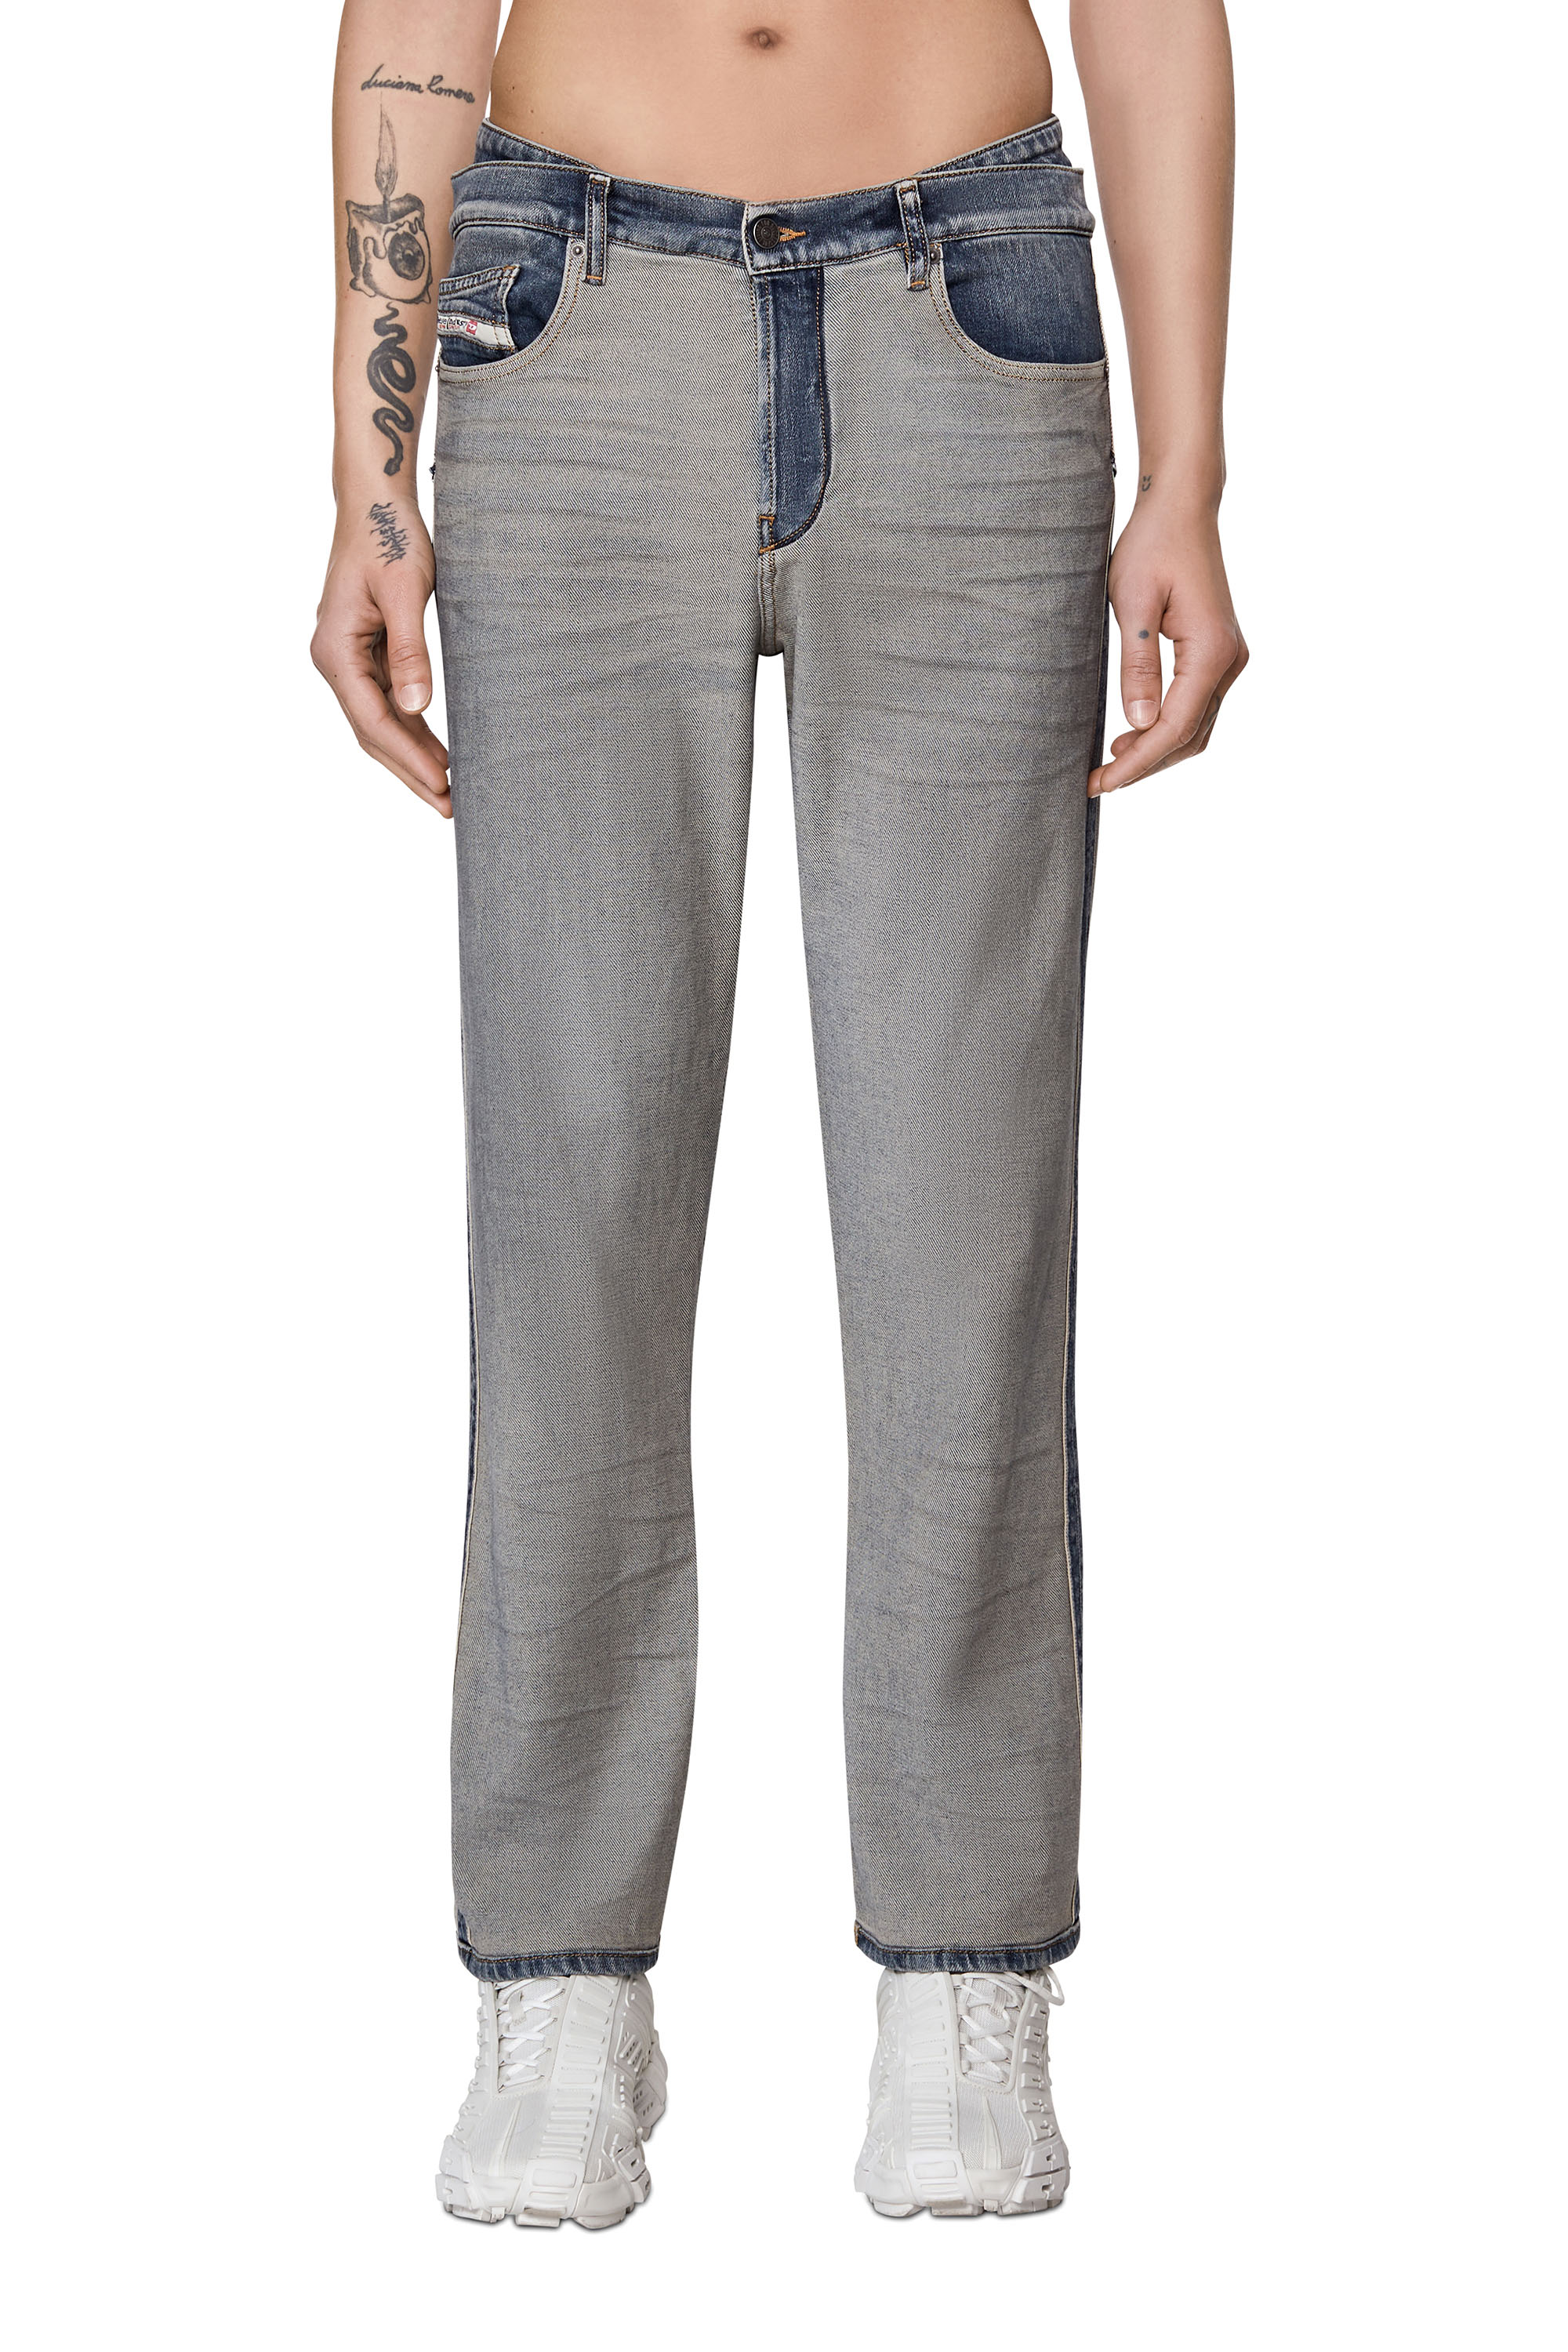 2020 D-VIKER 09C82 Straight Jeans, Blu medio - Jeans